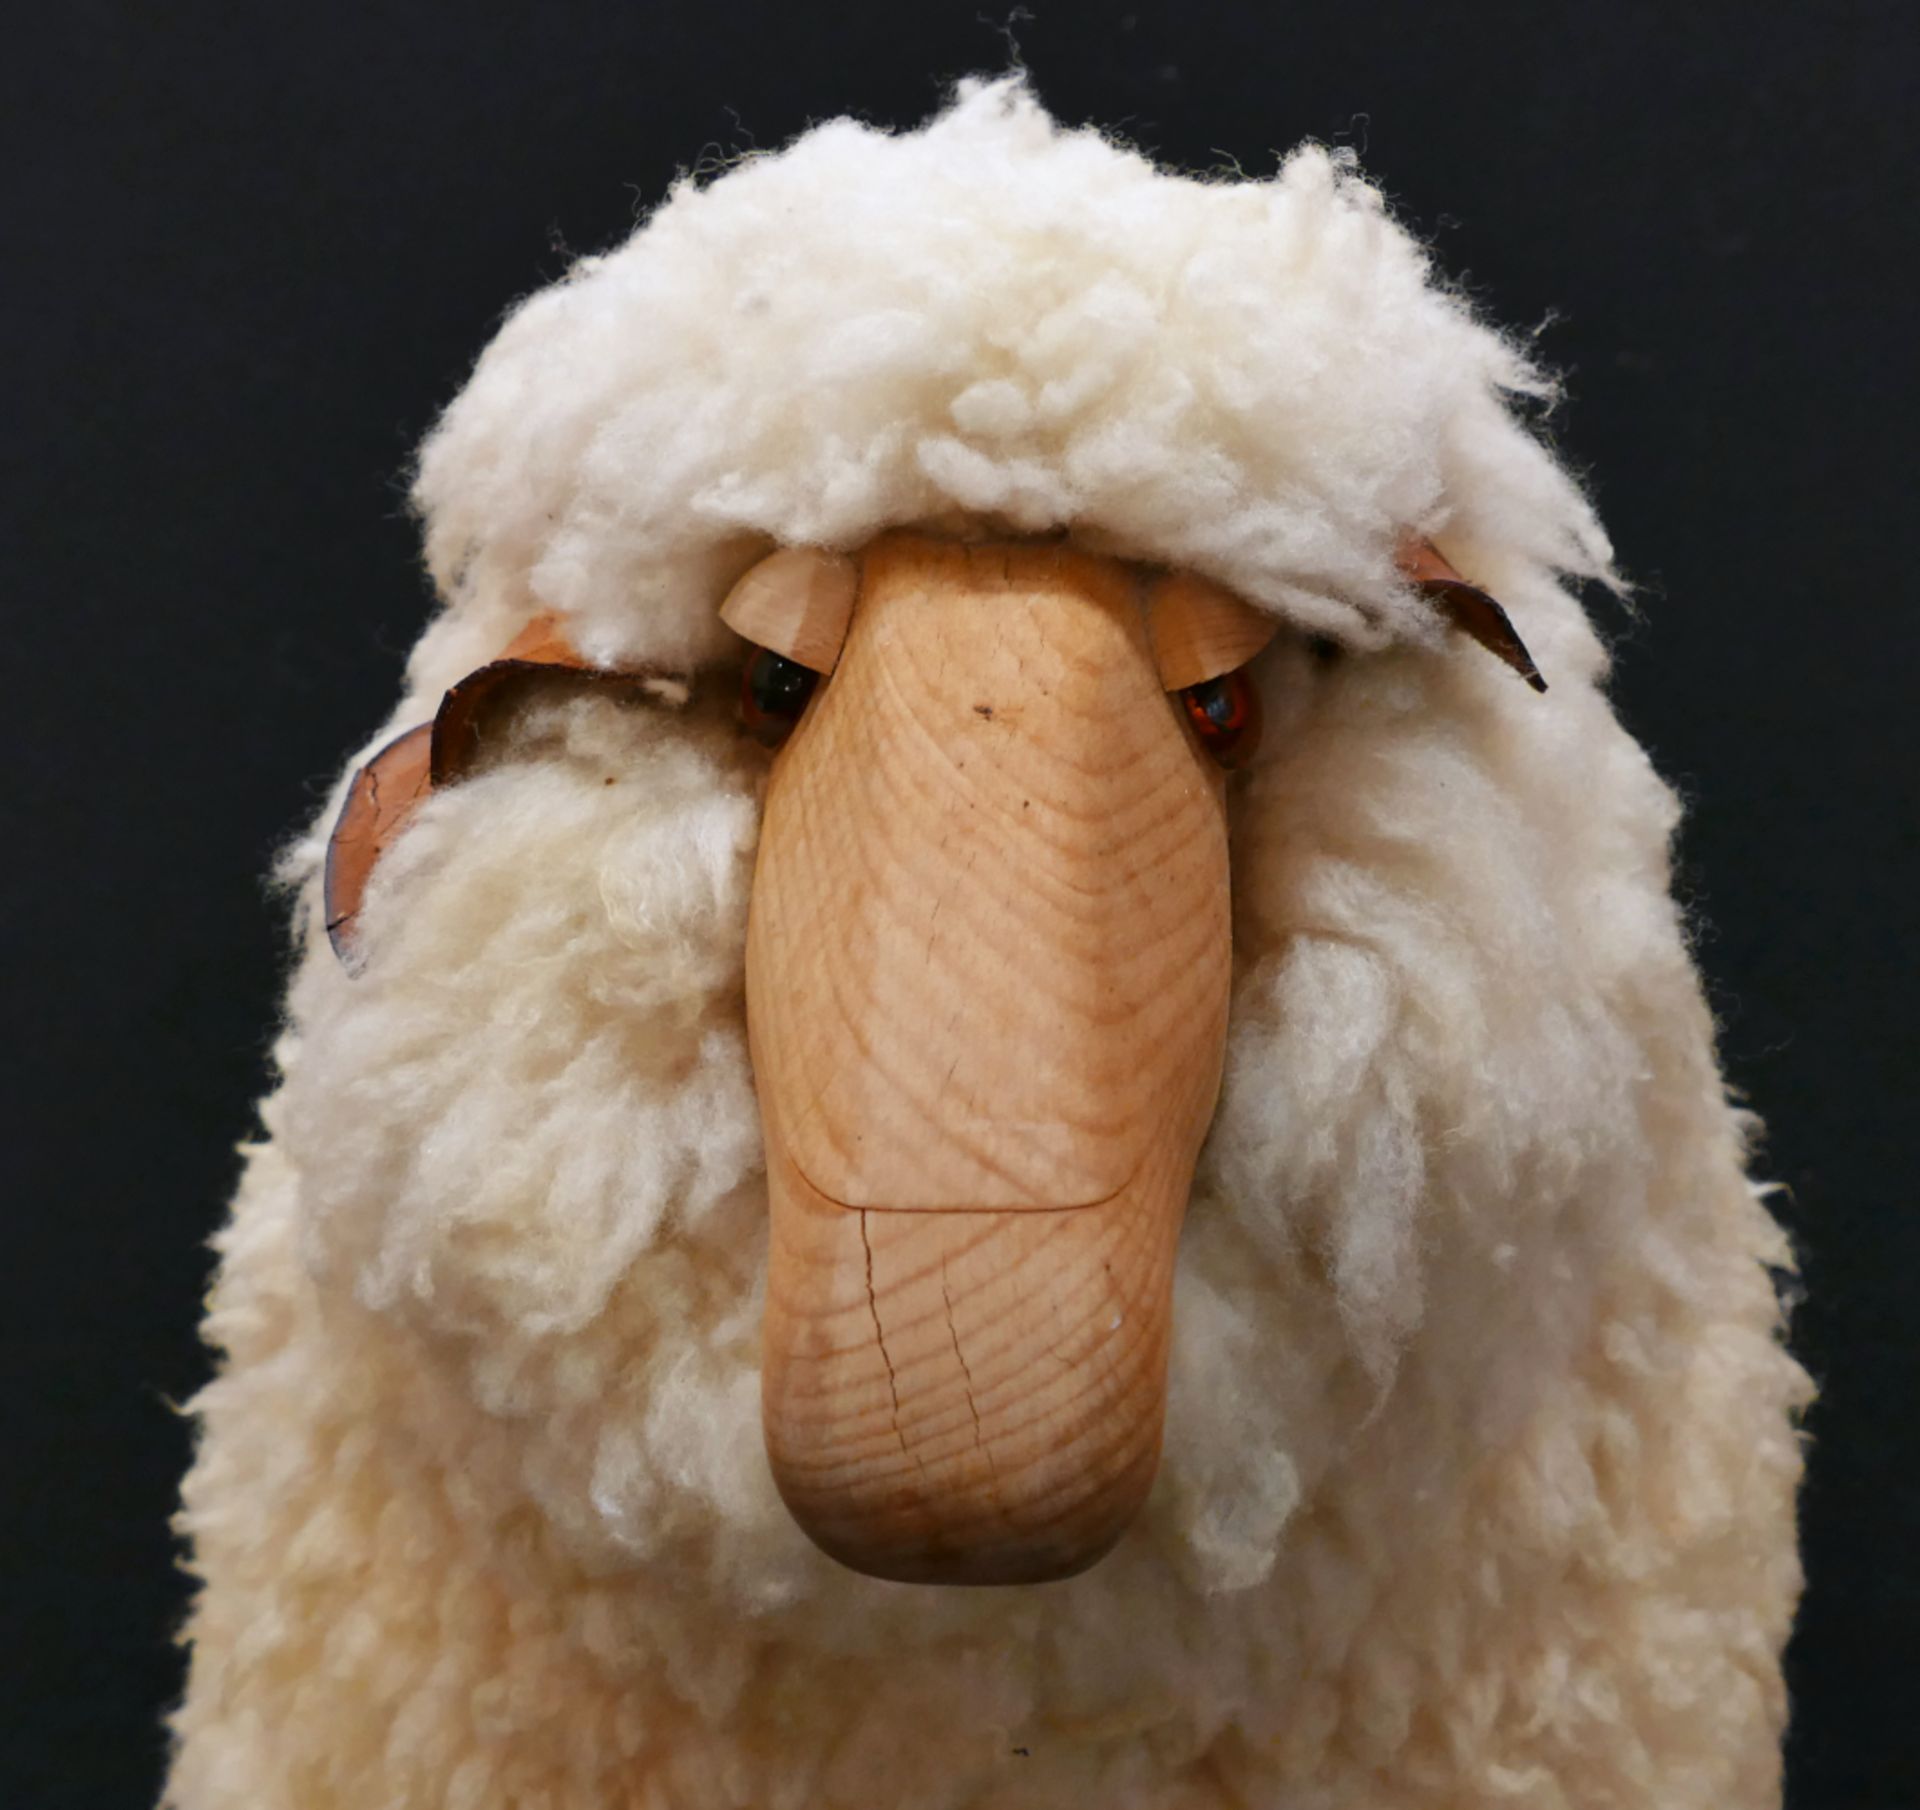 1 Hocker "Sheep" wohl Hans-Peter KRAFFT für MEIER 1960er Jahre, Holz/Wolle, ca. 60x73x36cm, - Image 2 of 3